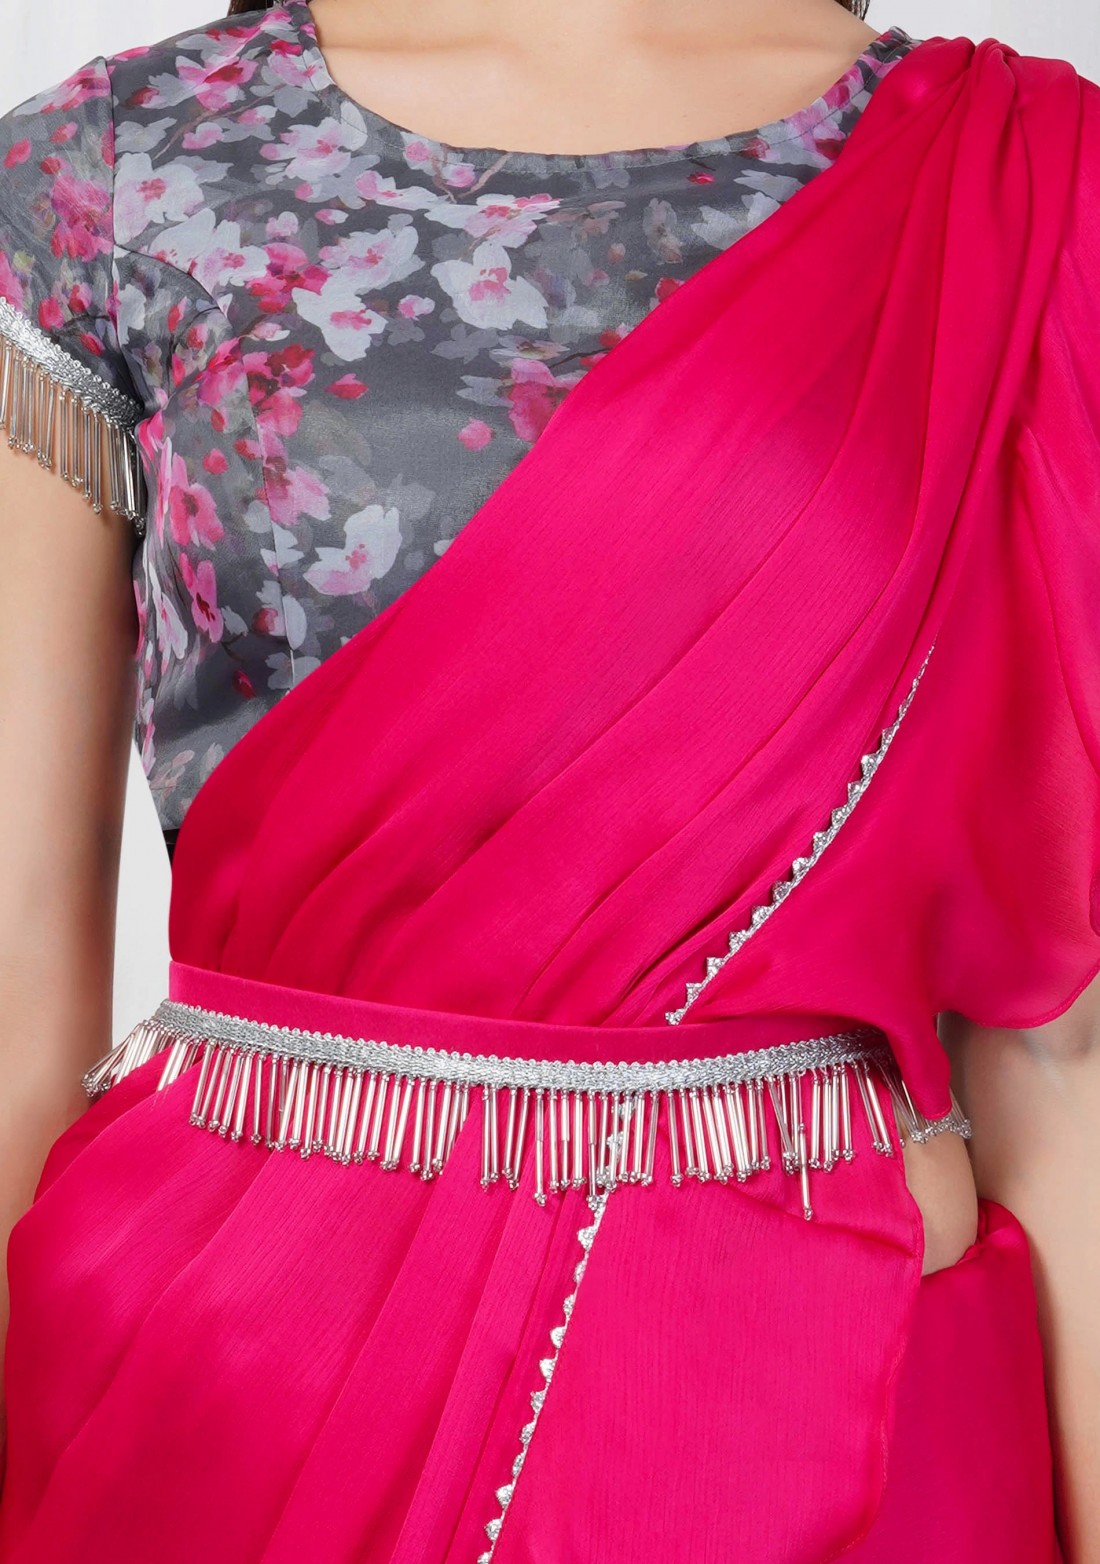 Hot Pink Satin Chiffon Ruffle Saree with Organza Printed Blouse